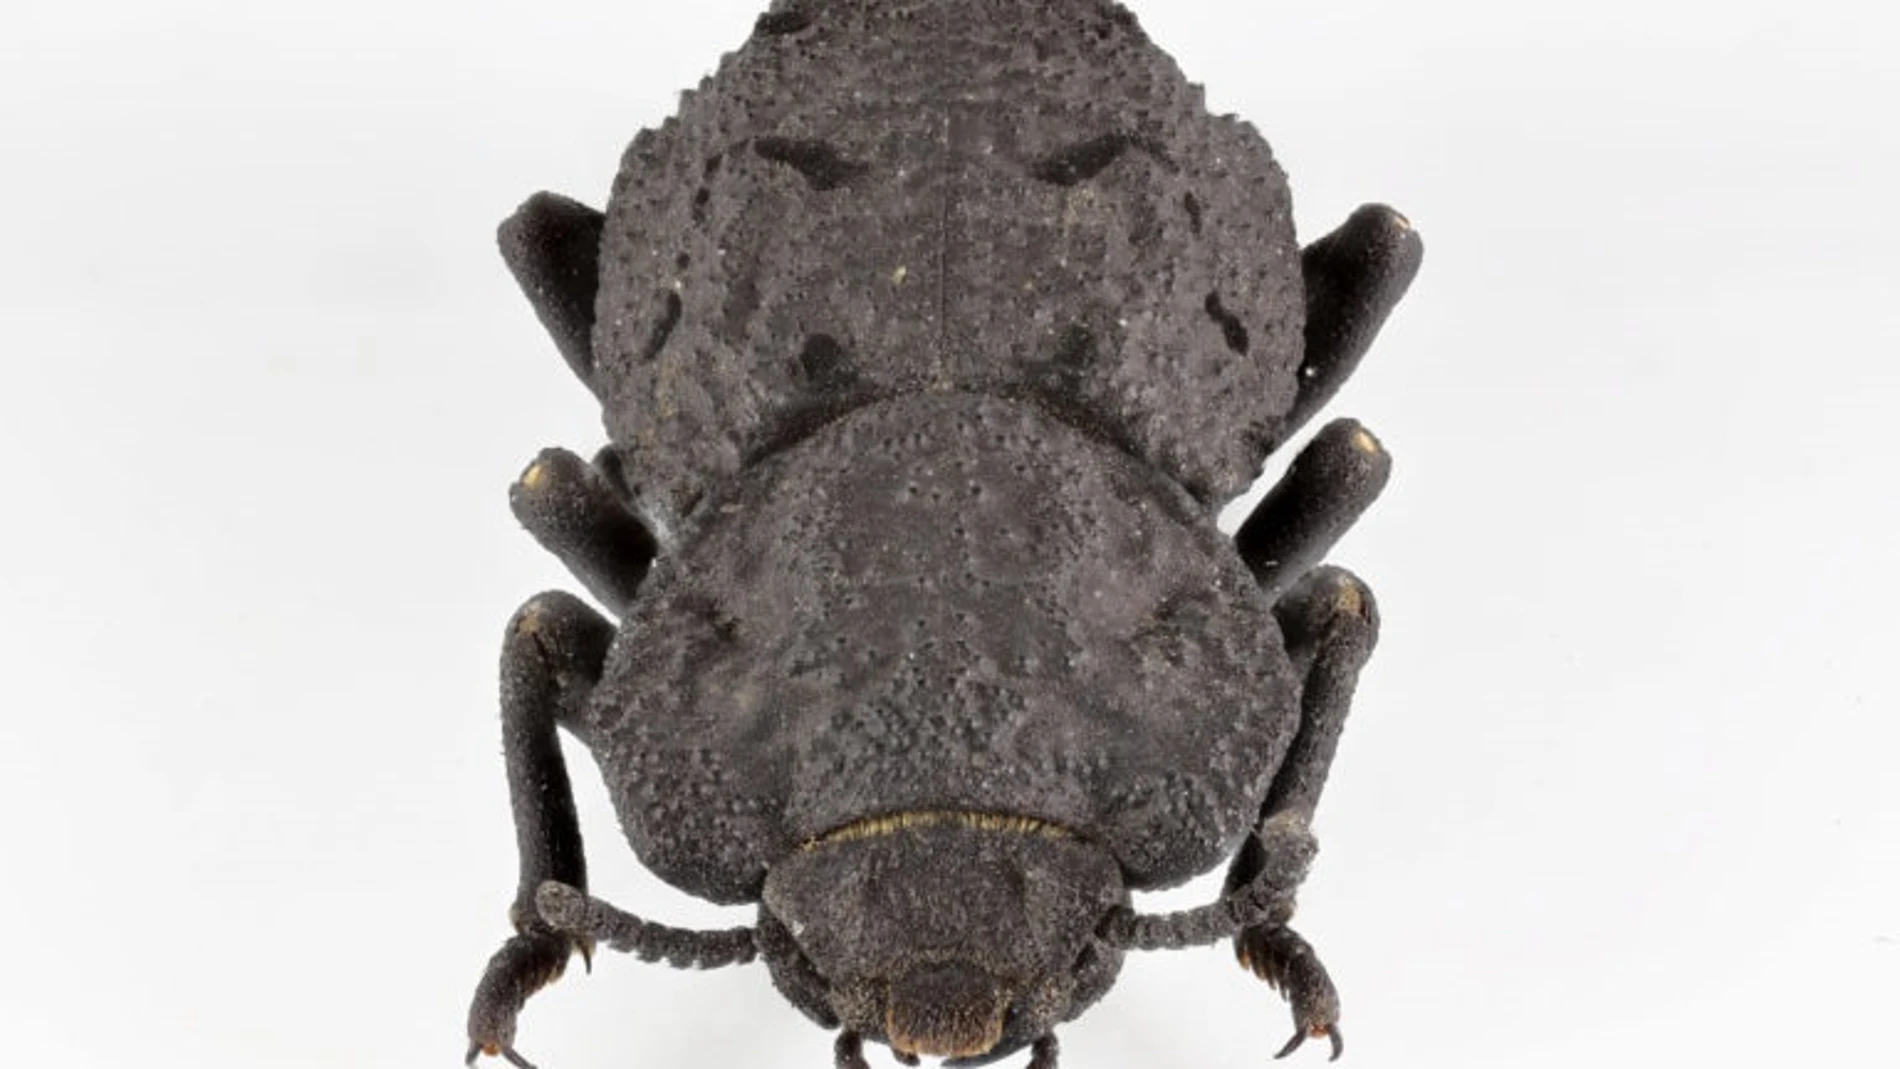 Originario de los hábitats desérticos del sur de California, el diabólico escarabajo acorazado tiene un exoesqueleto que es una de las estructuras más resistentes y resistentes al aplastamiento que se conocen en el reino animal.JESUS RIVERA / UCI